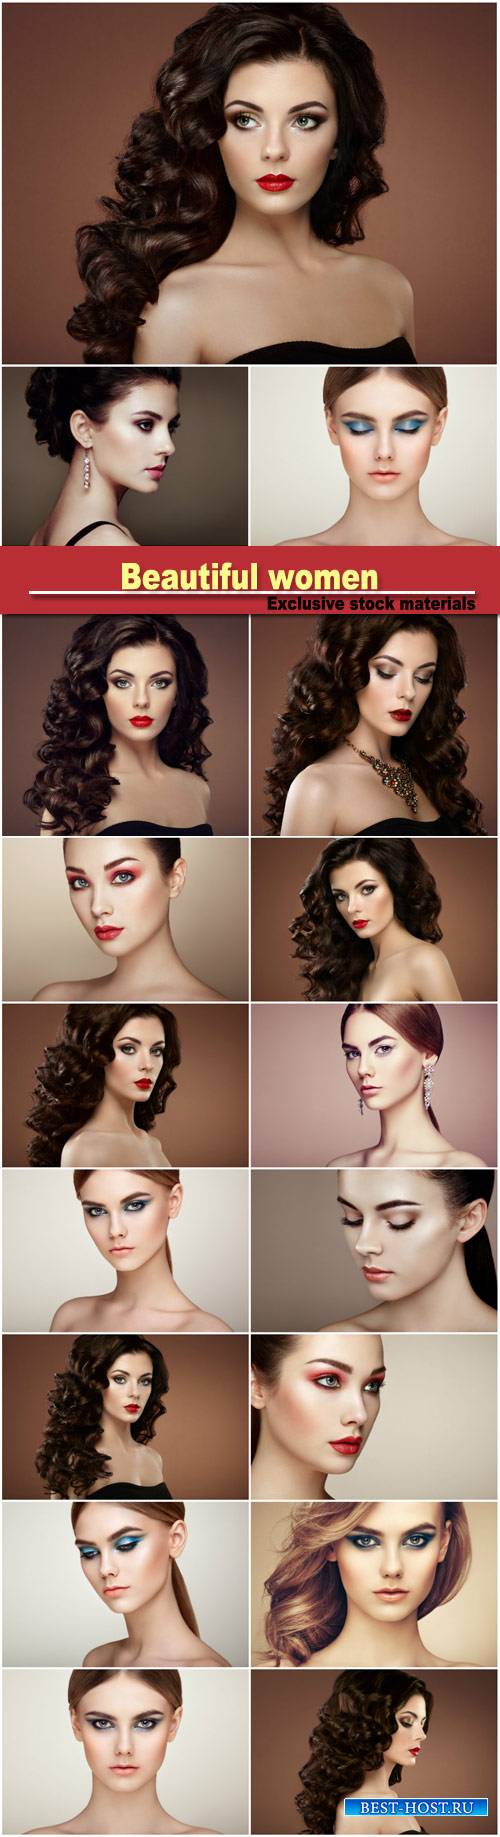 Beautiful women, stylish makeup, hairstyles